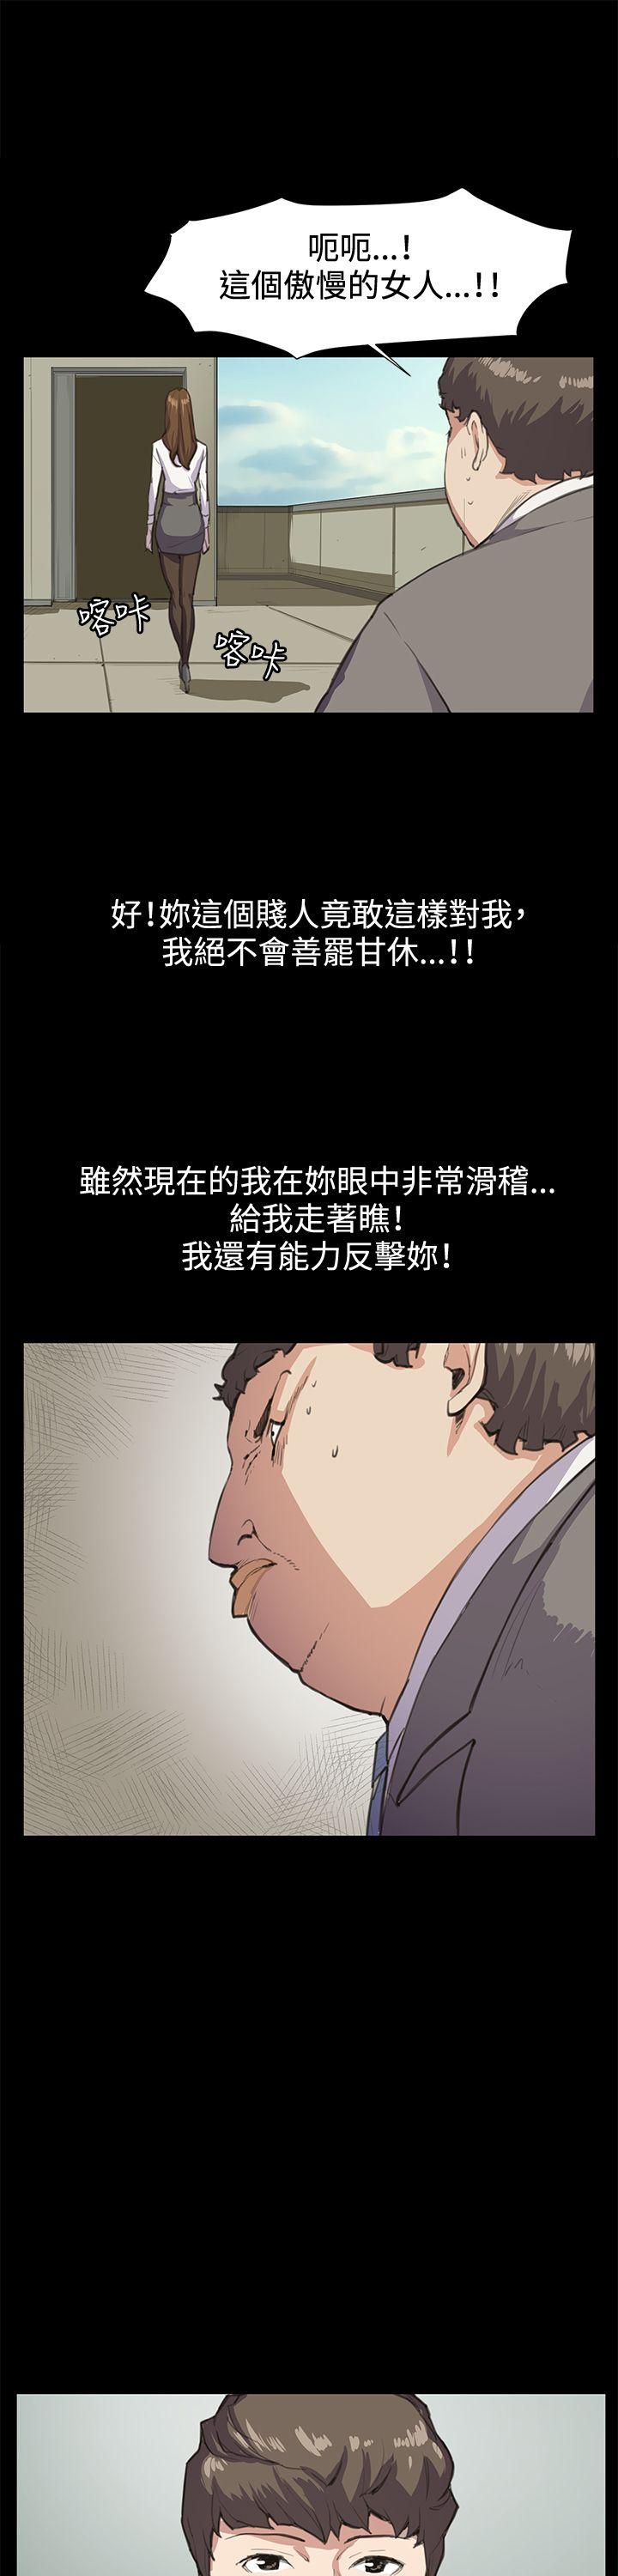 韩国污漫画 深夜便利店 第15话 11